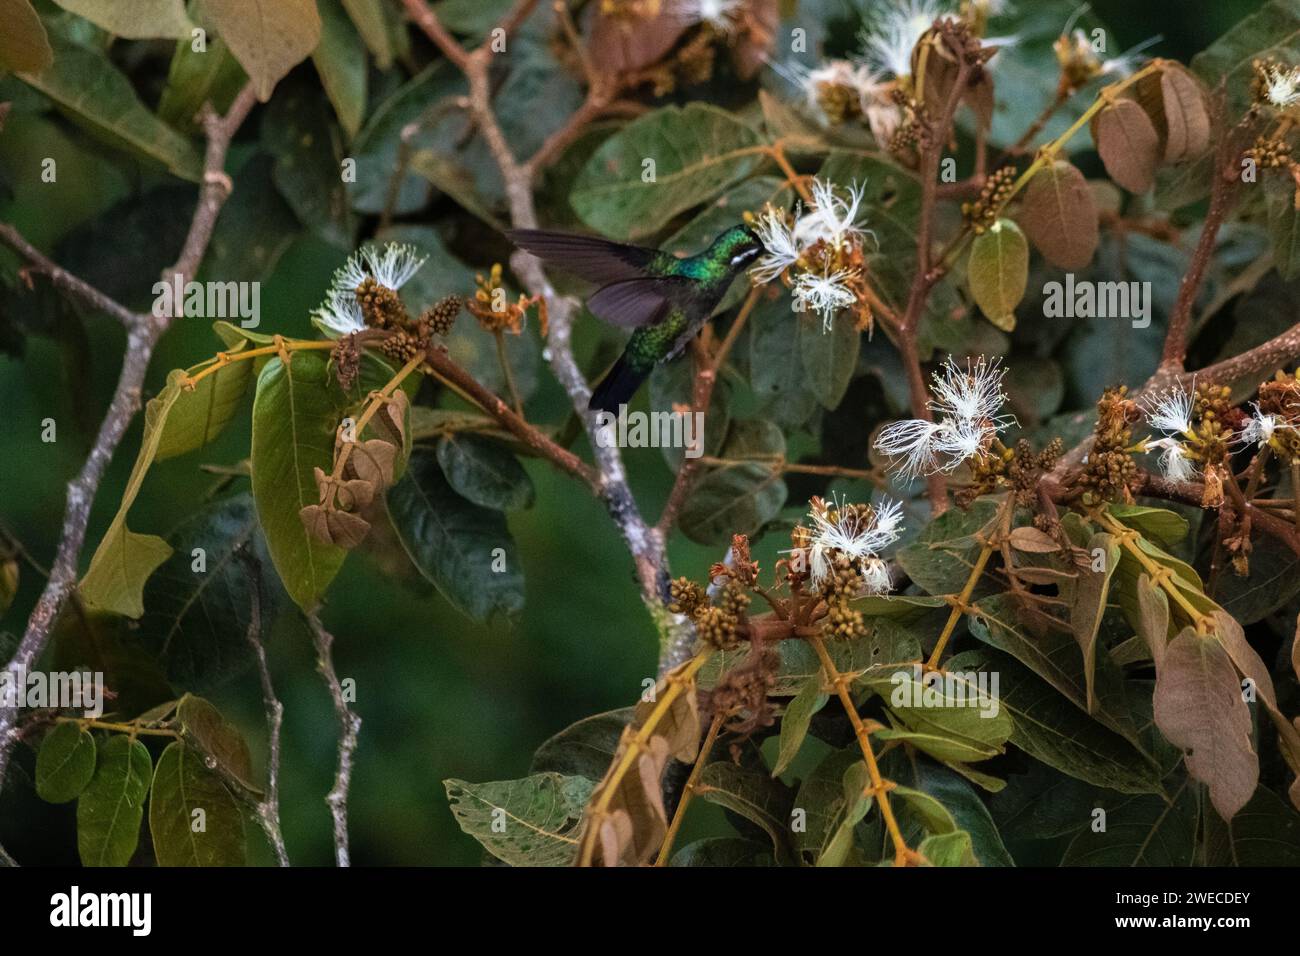 Catturando il delicato balletto di un colibrì costaricano, mentre sorseggia con grazia nettare da fioriture vibranti in una sinfonia di eleganza della natura Foto Stock